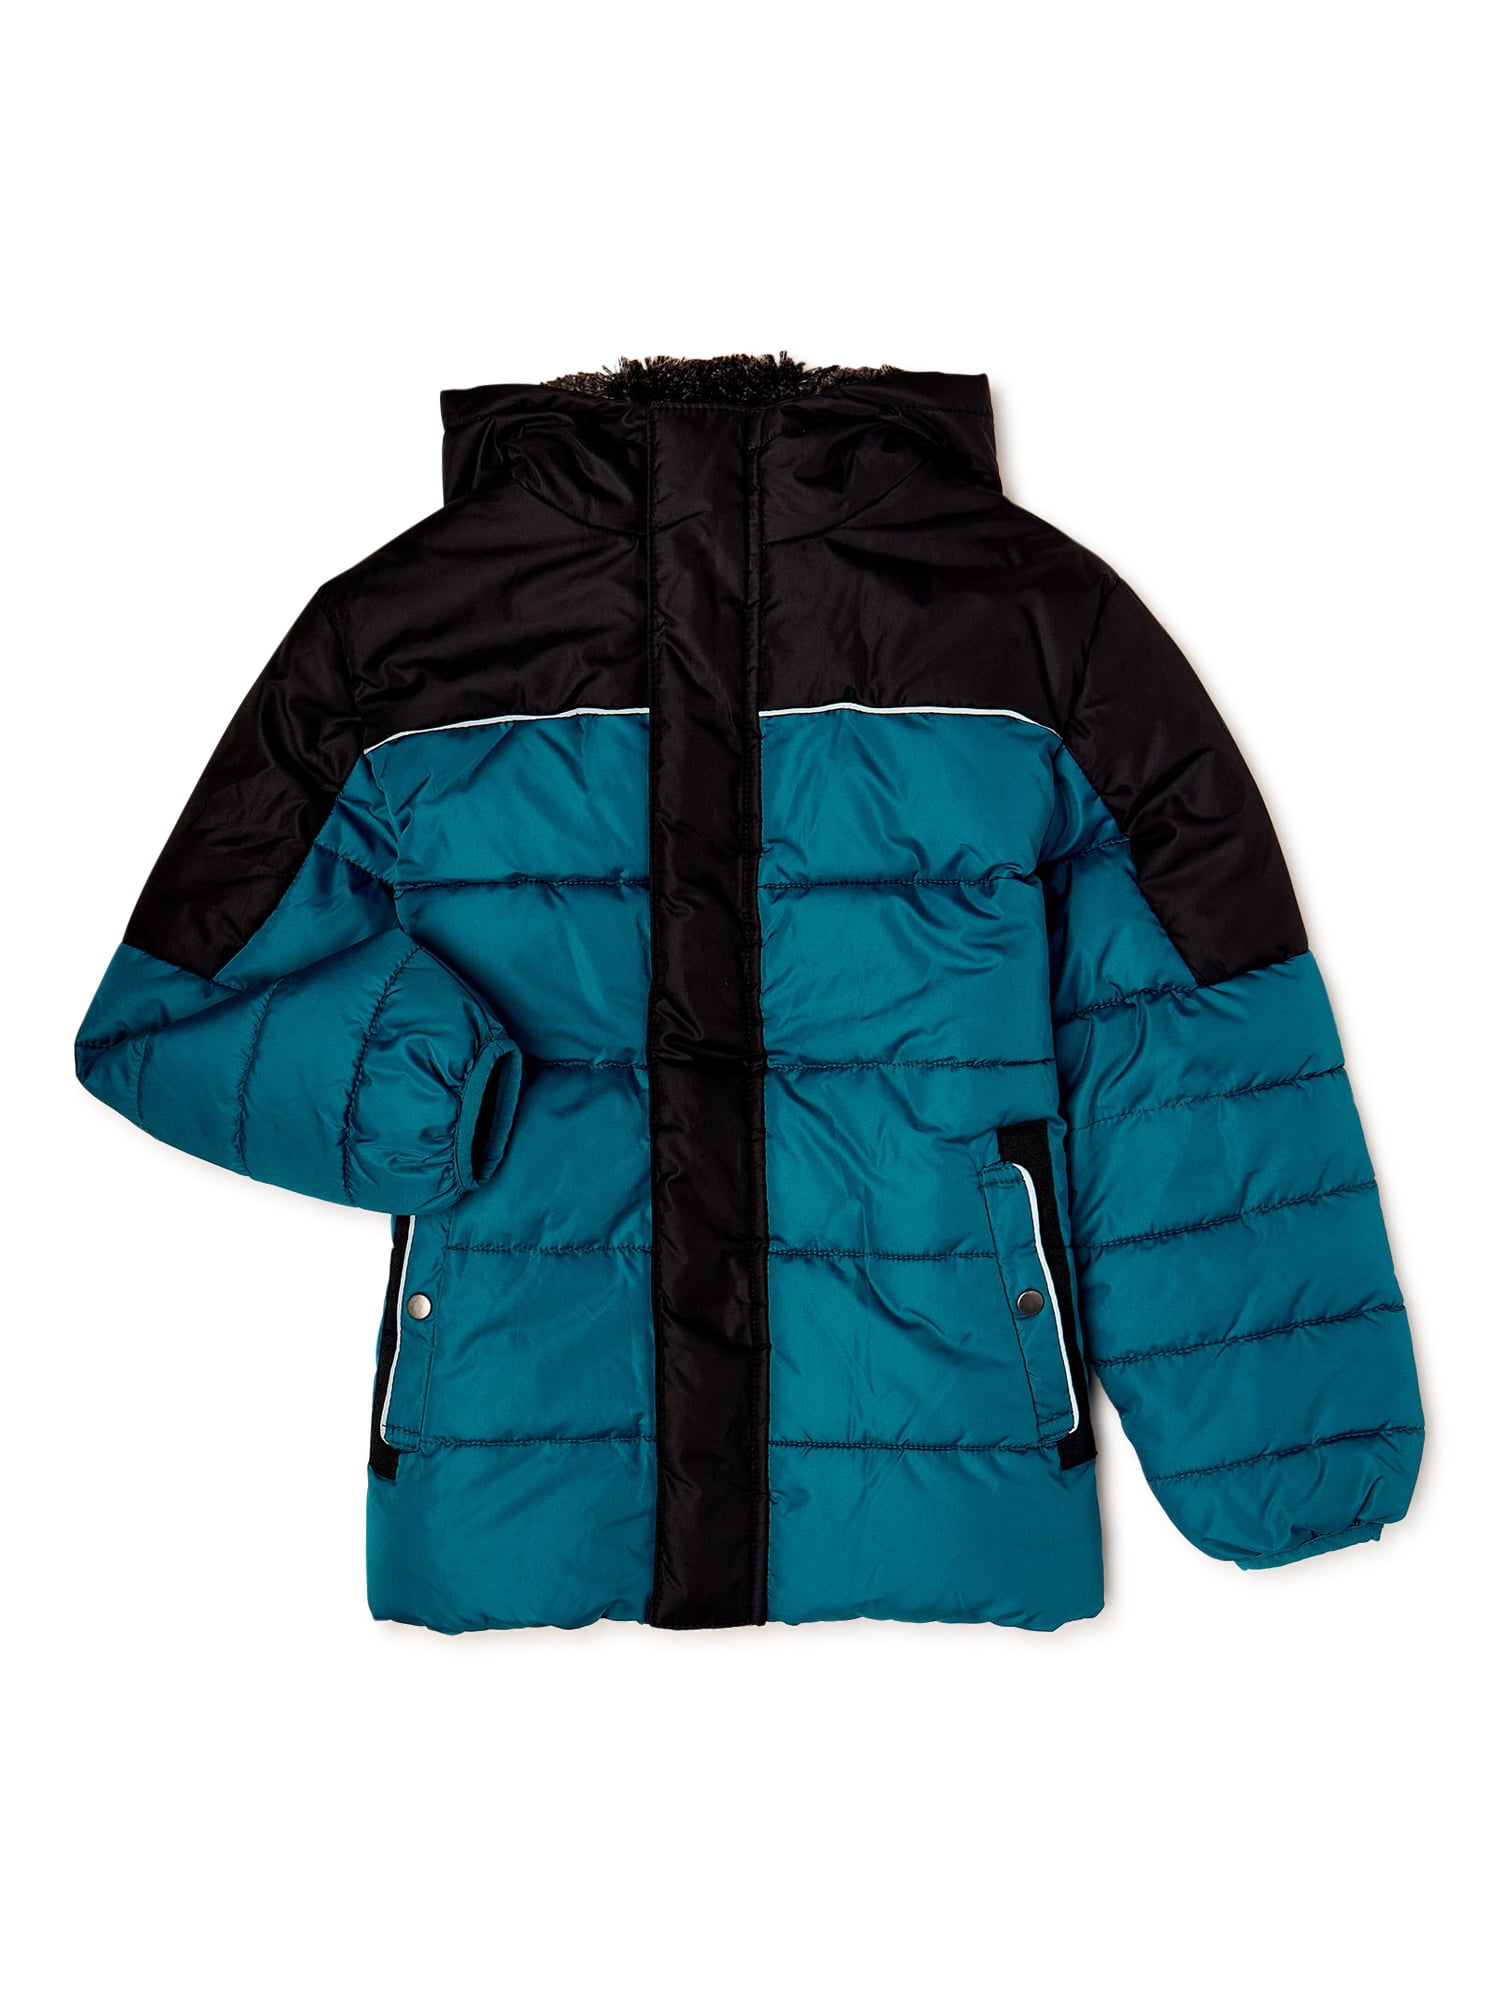 Swiss Tech Boys Winter Puffer Jacket with Hood, Sizes 4-18 - Walmart.com